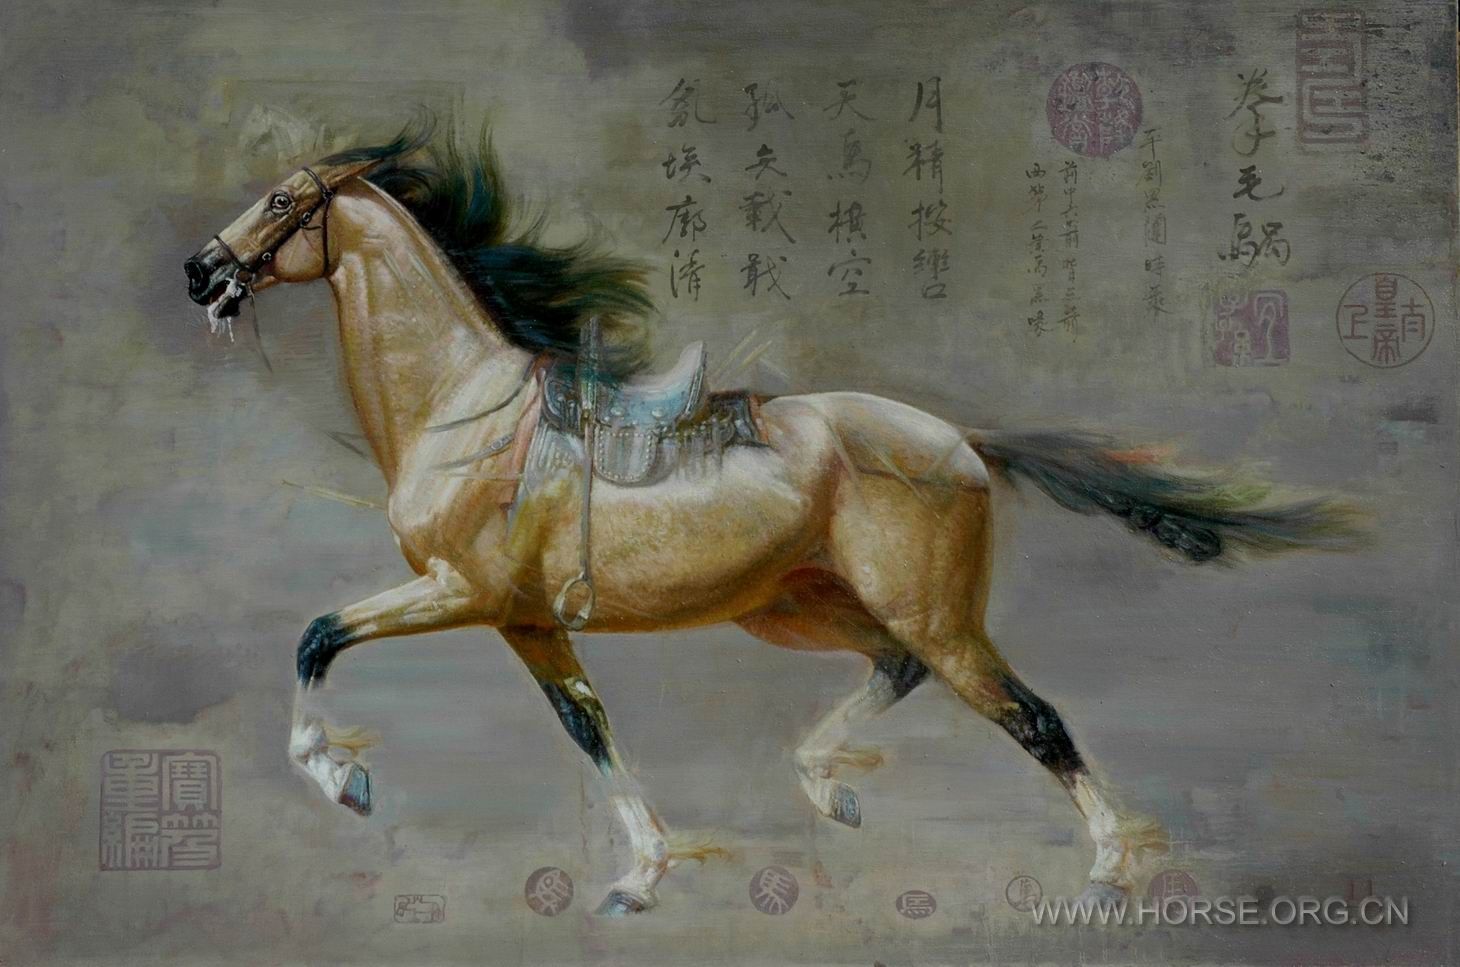 油画《马魂。唐太宗六骏之拳毛胍》180X120CM。201004。DSC_7156.JPG